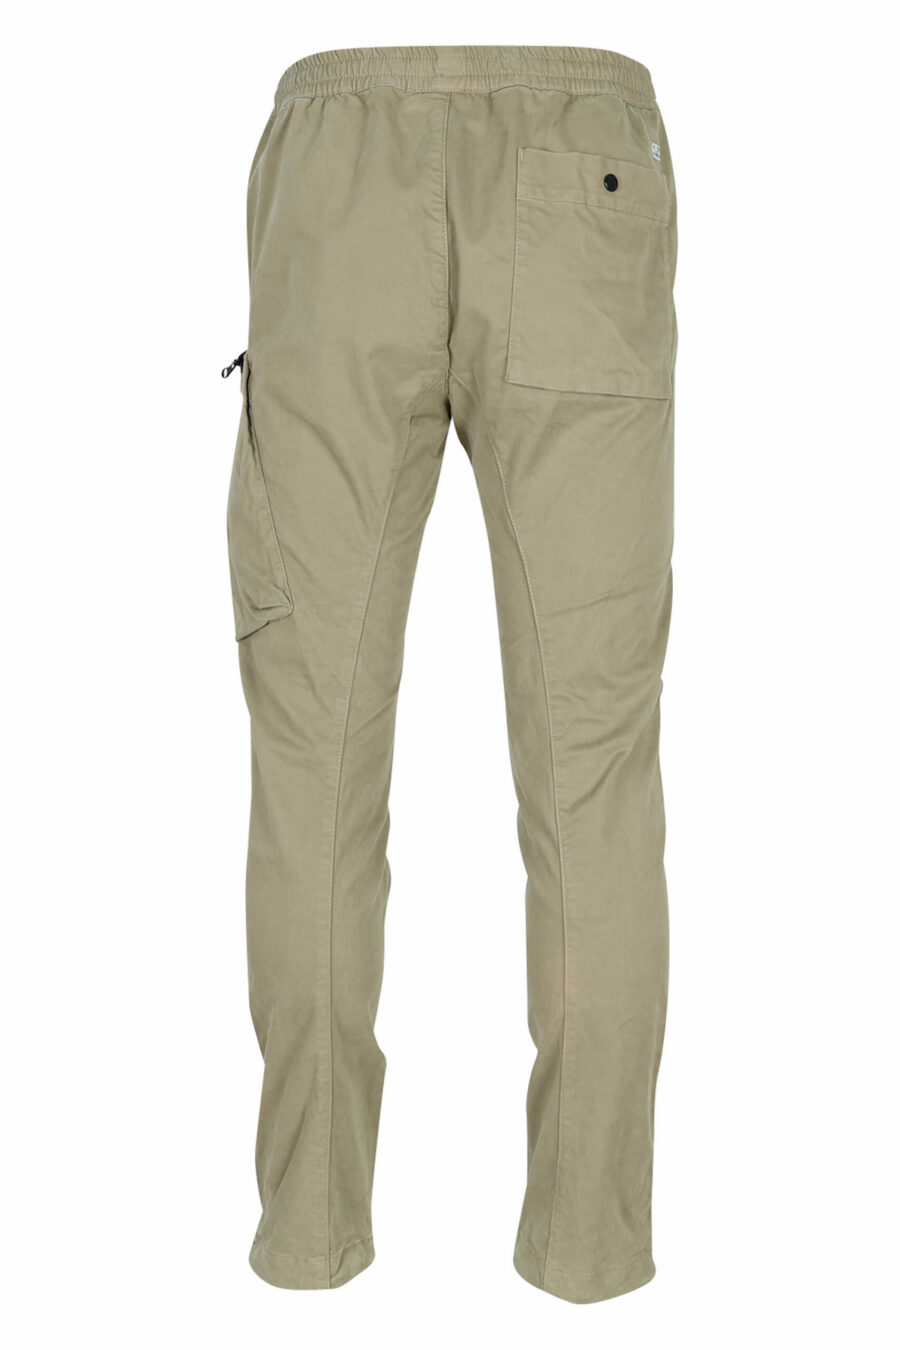 Pantalon en satin stretch beige avec poche latérale et lentille logo - 7620943578416 2 scaled